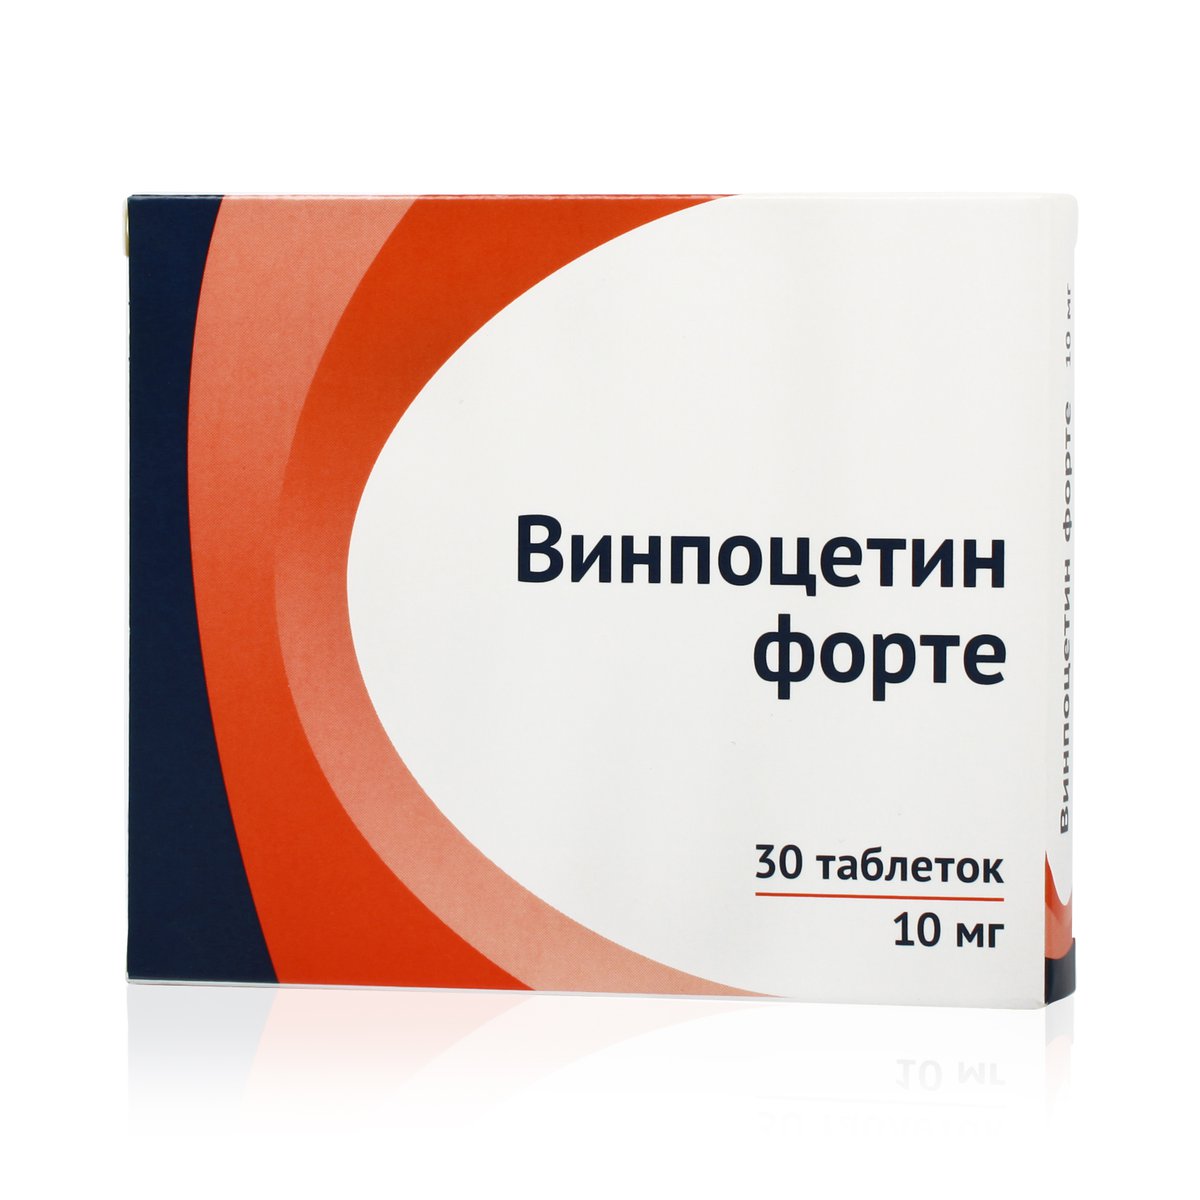 Винпоцетин форте (таблетки, 30 шт, 10 мг) - цена,  онлайн в .